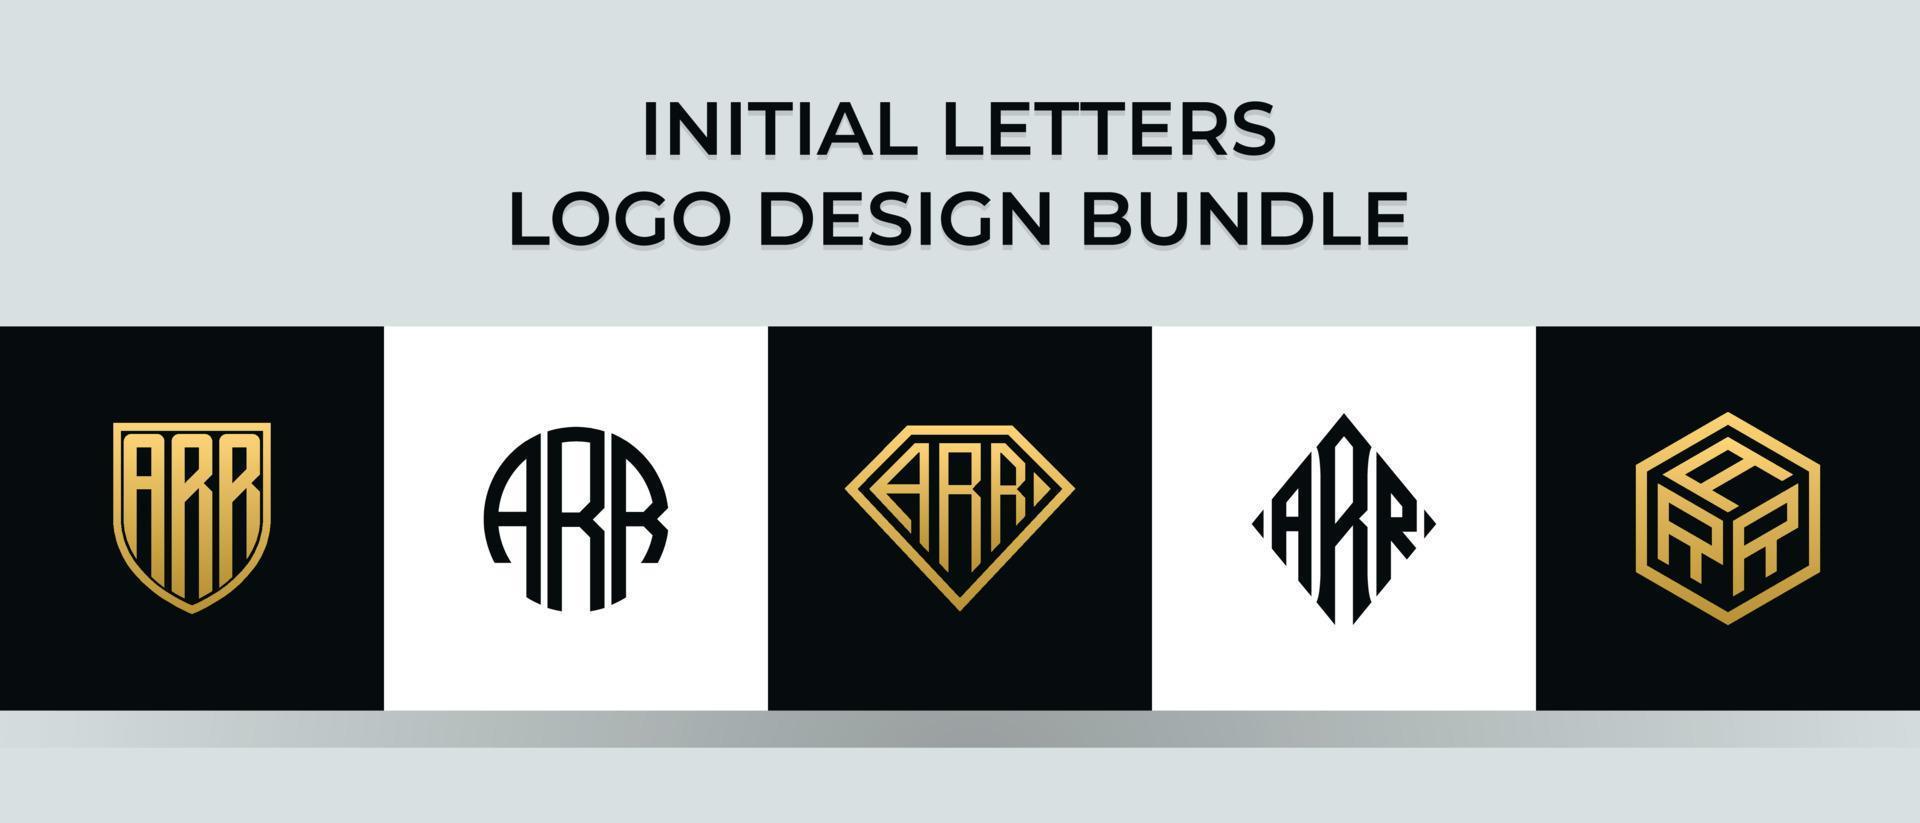 Initial letters ARR logo designs Bundle vector